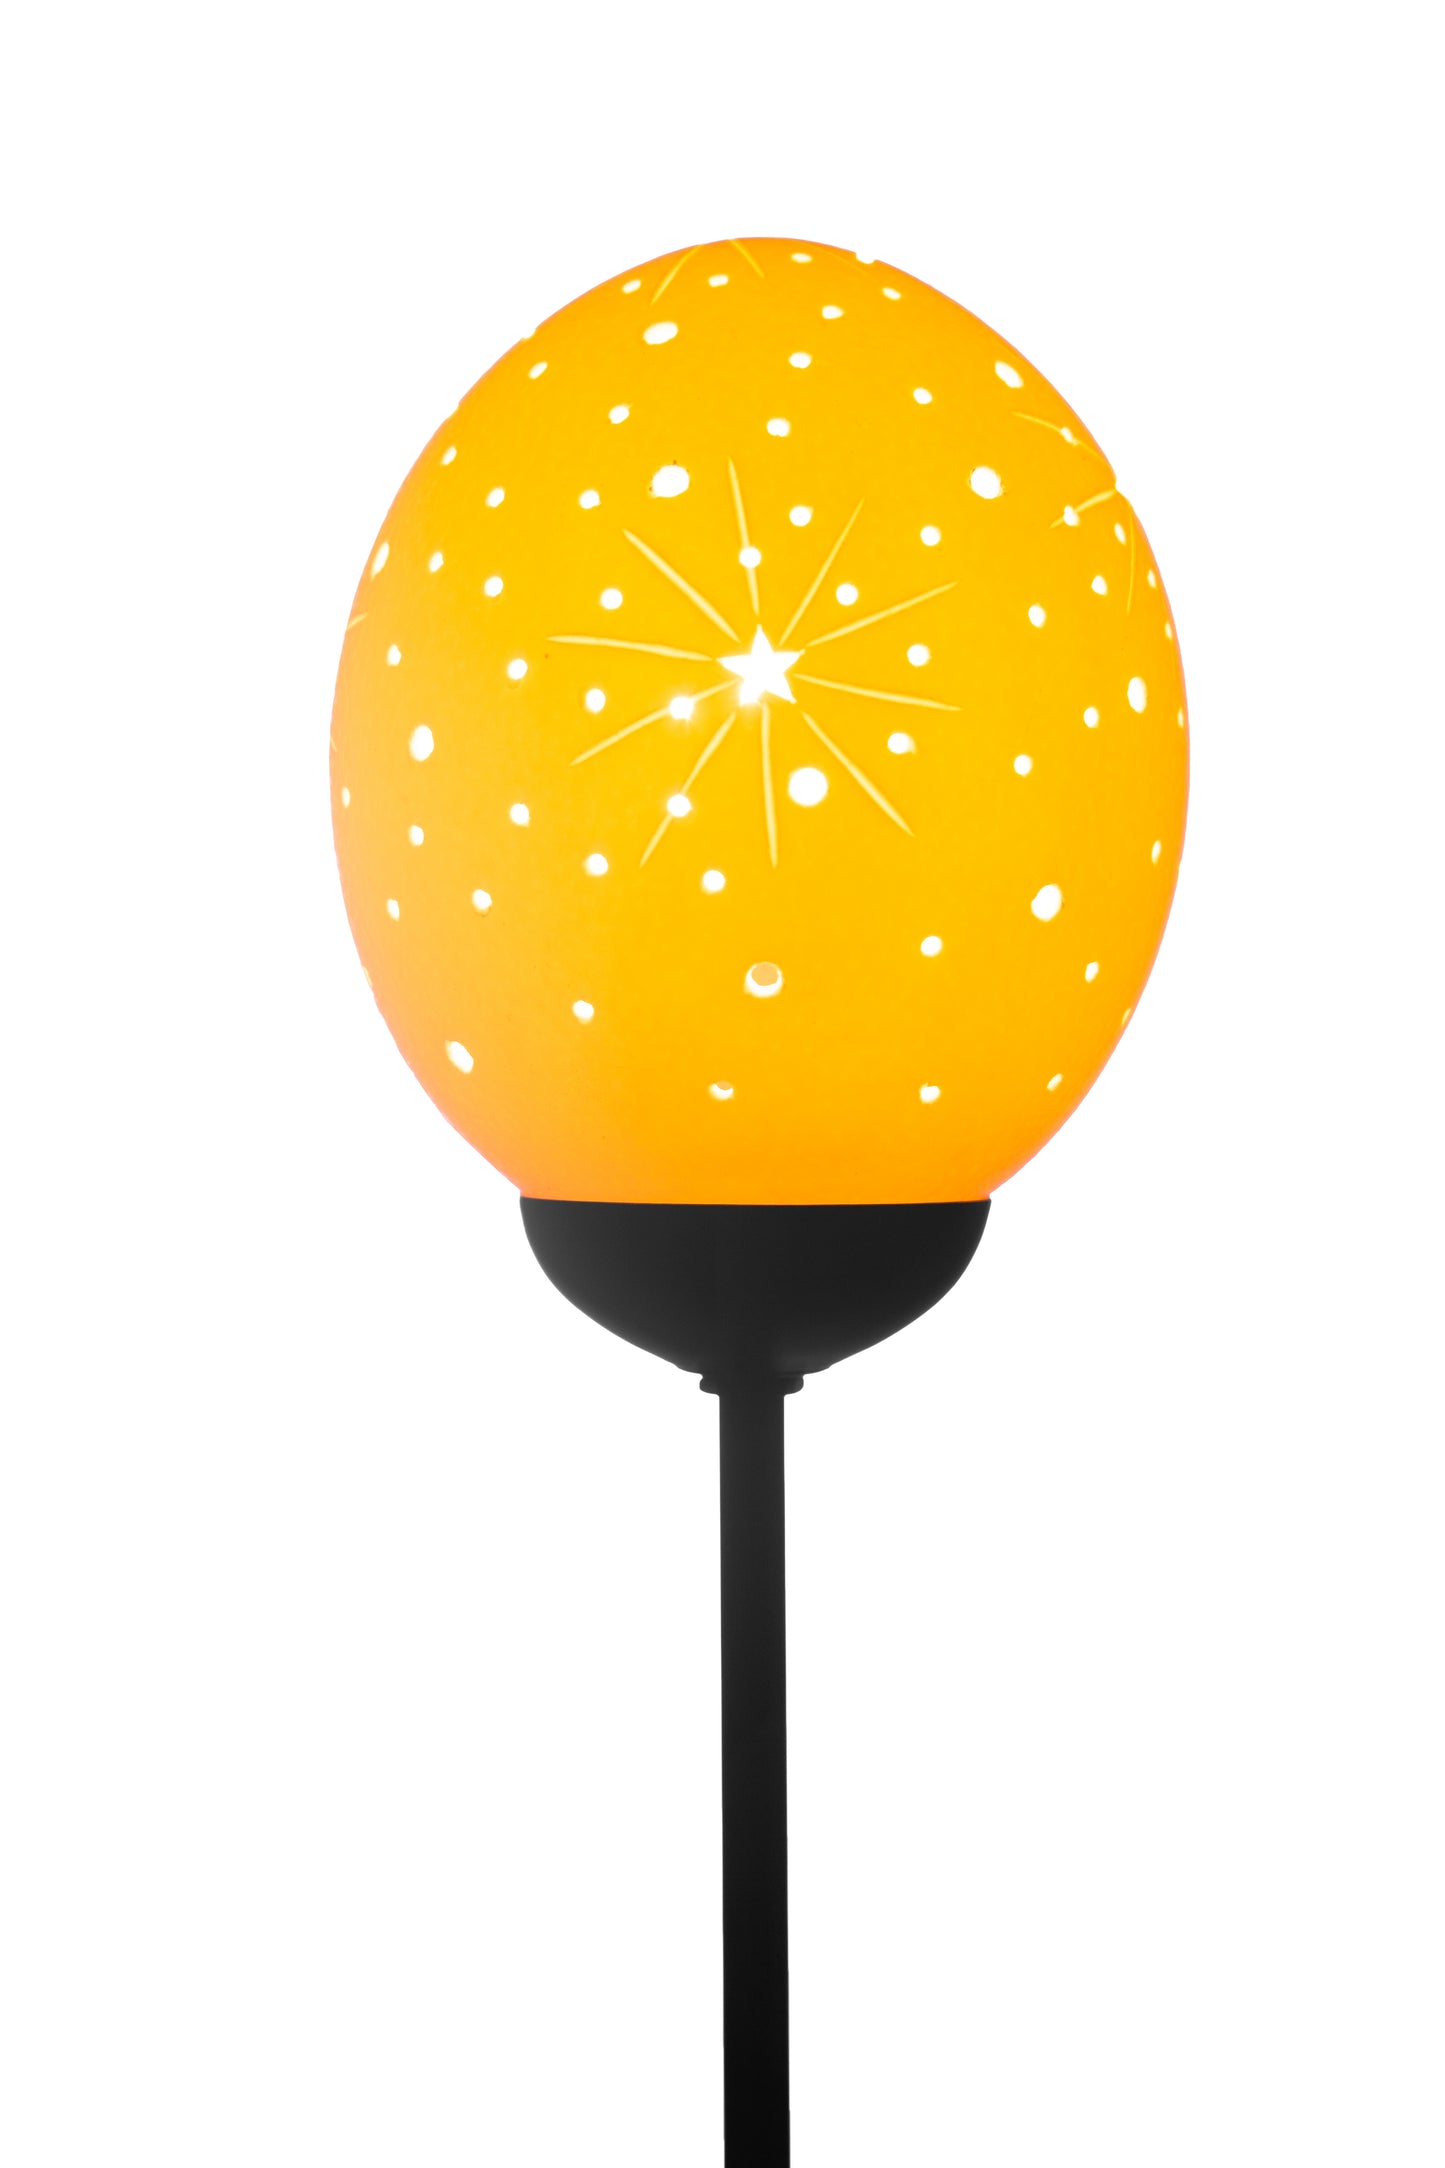 Starburst themed ostrich egg lamp